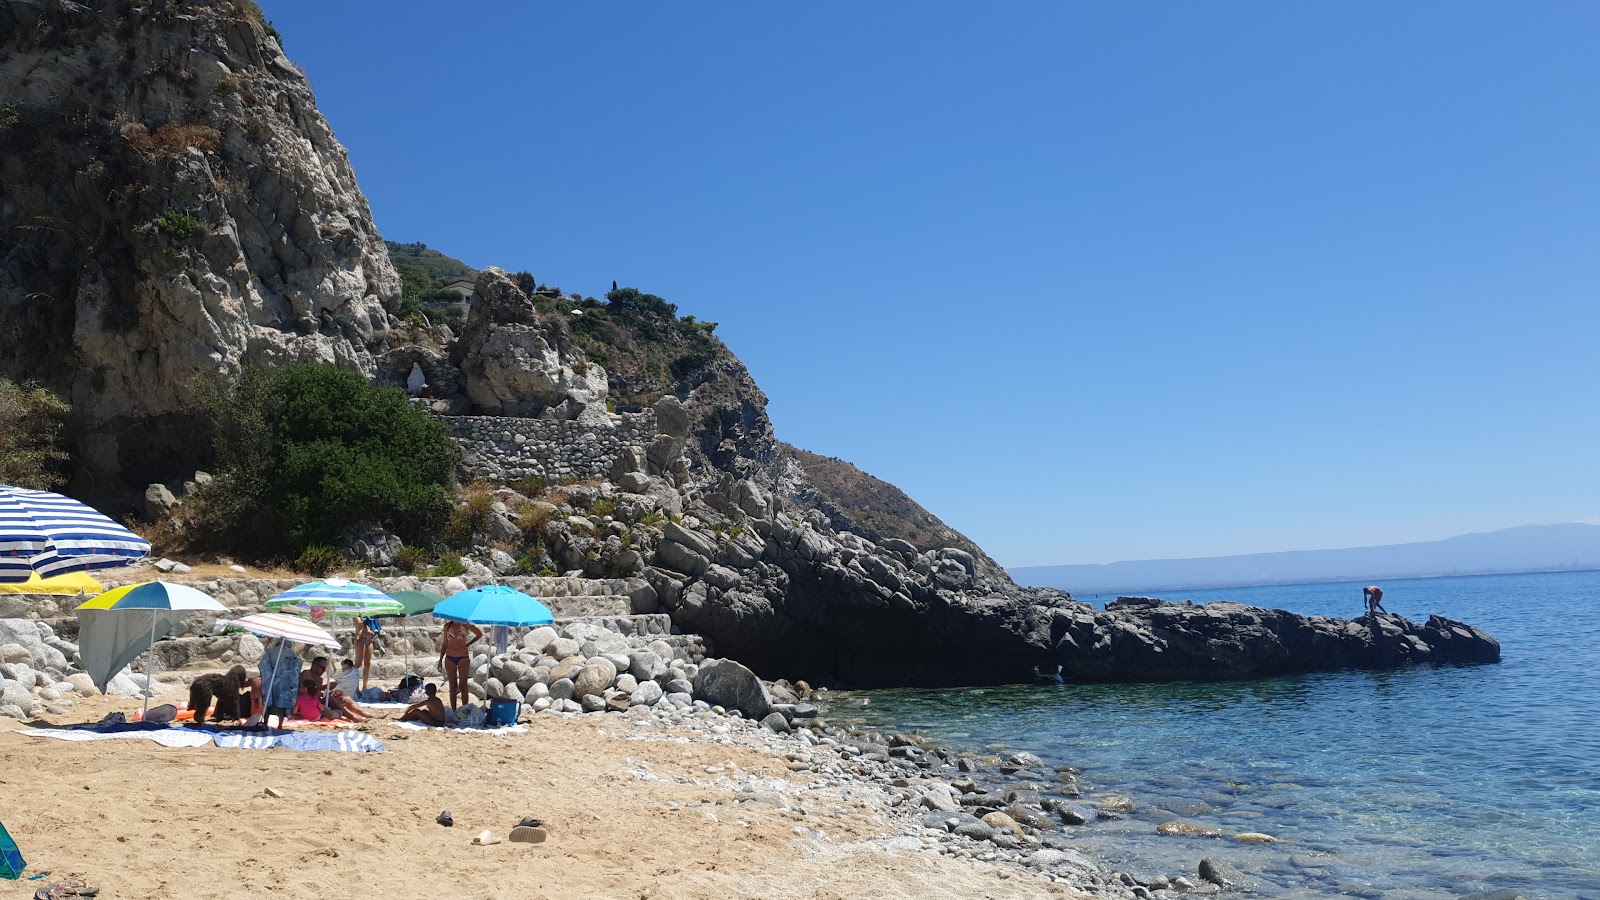 Photo of Spiaggia di Coccorino and the settlement